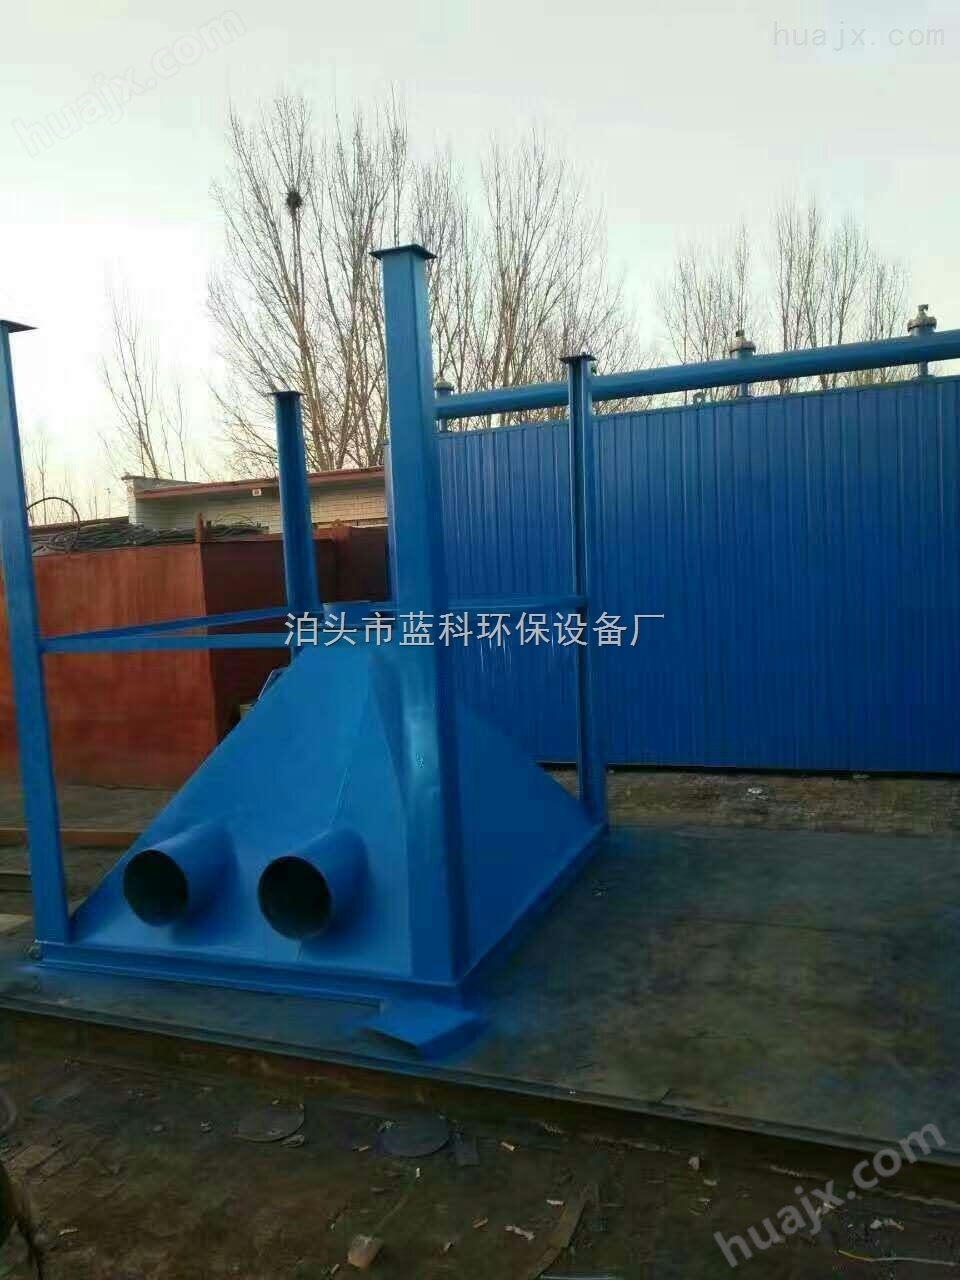 中国蓝科新一代水泥厂GMC耐高温脉冲袋收尘器 耐高温脉冲除尘器泊头脉冲除尘设备厂